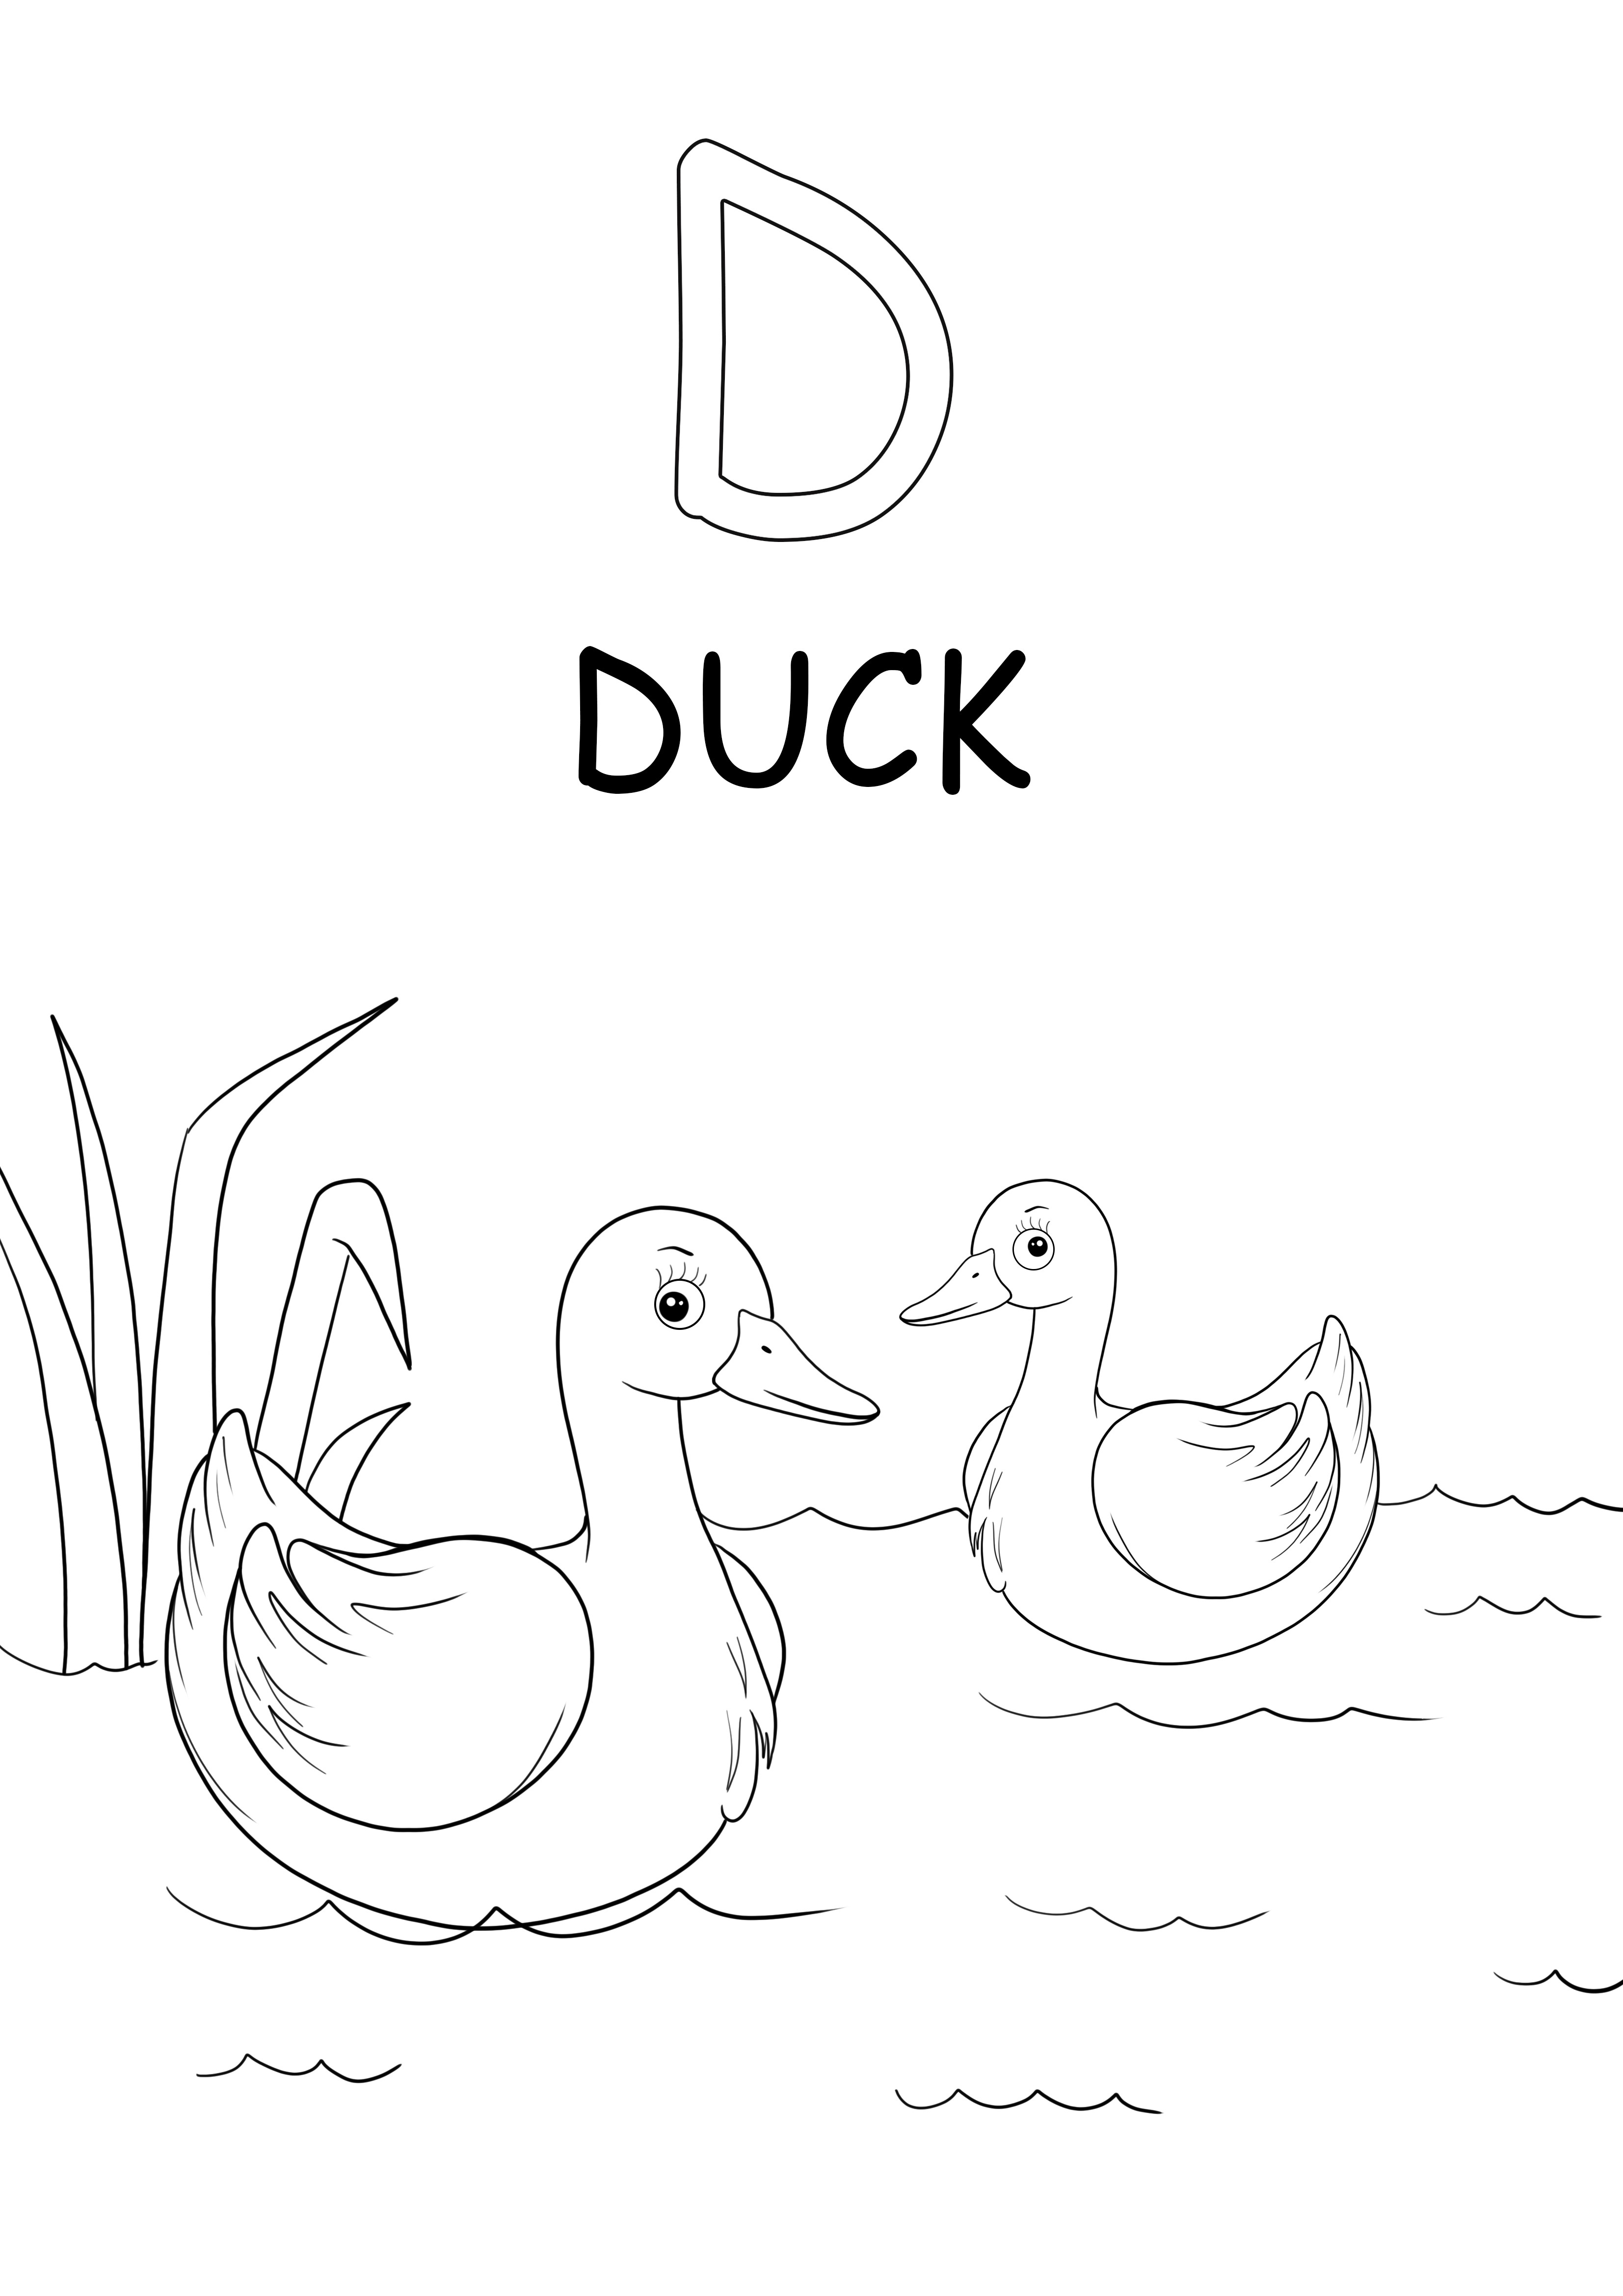 Büyük harf D, ördek kelimesi ücretsiz yazdırılabilir sayfa içindir